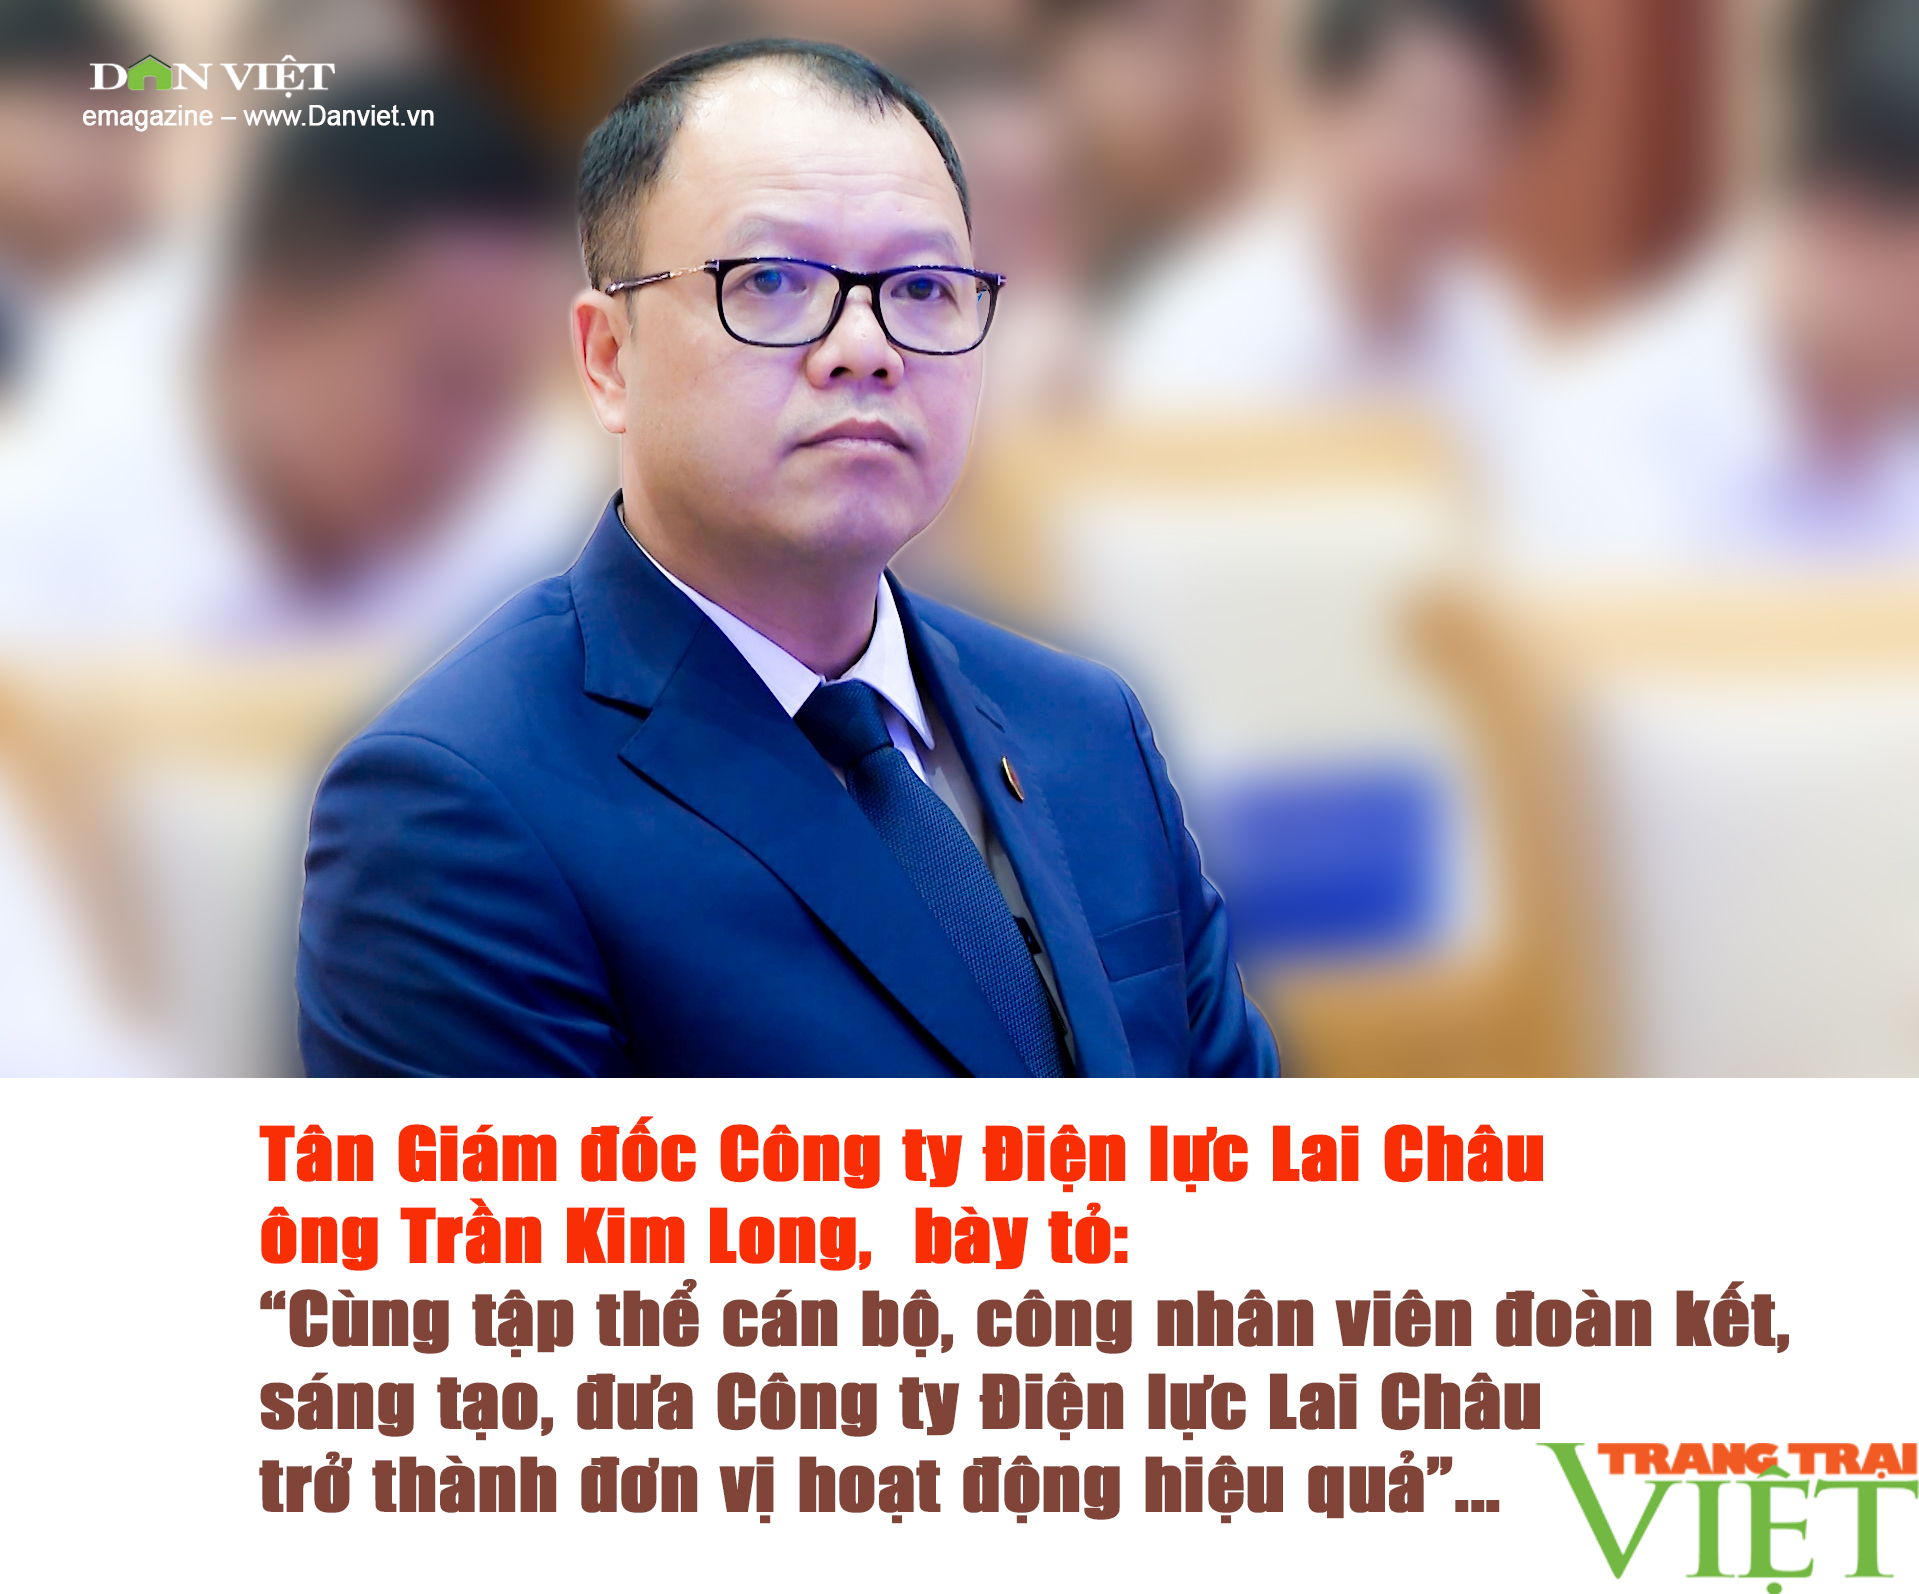 Ông Trần Kim Long được bổ nhiệm giữ chức Giám đốc Công ty Điện lực Lai Châu - Ảnh 7.